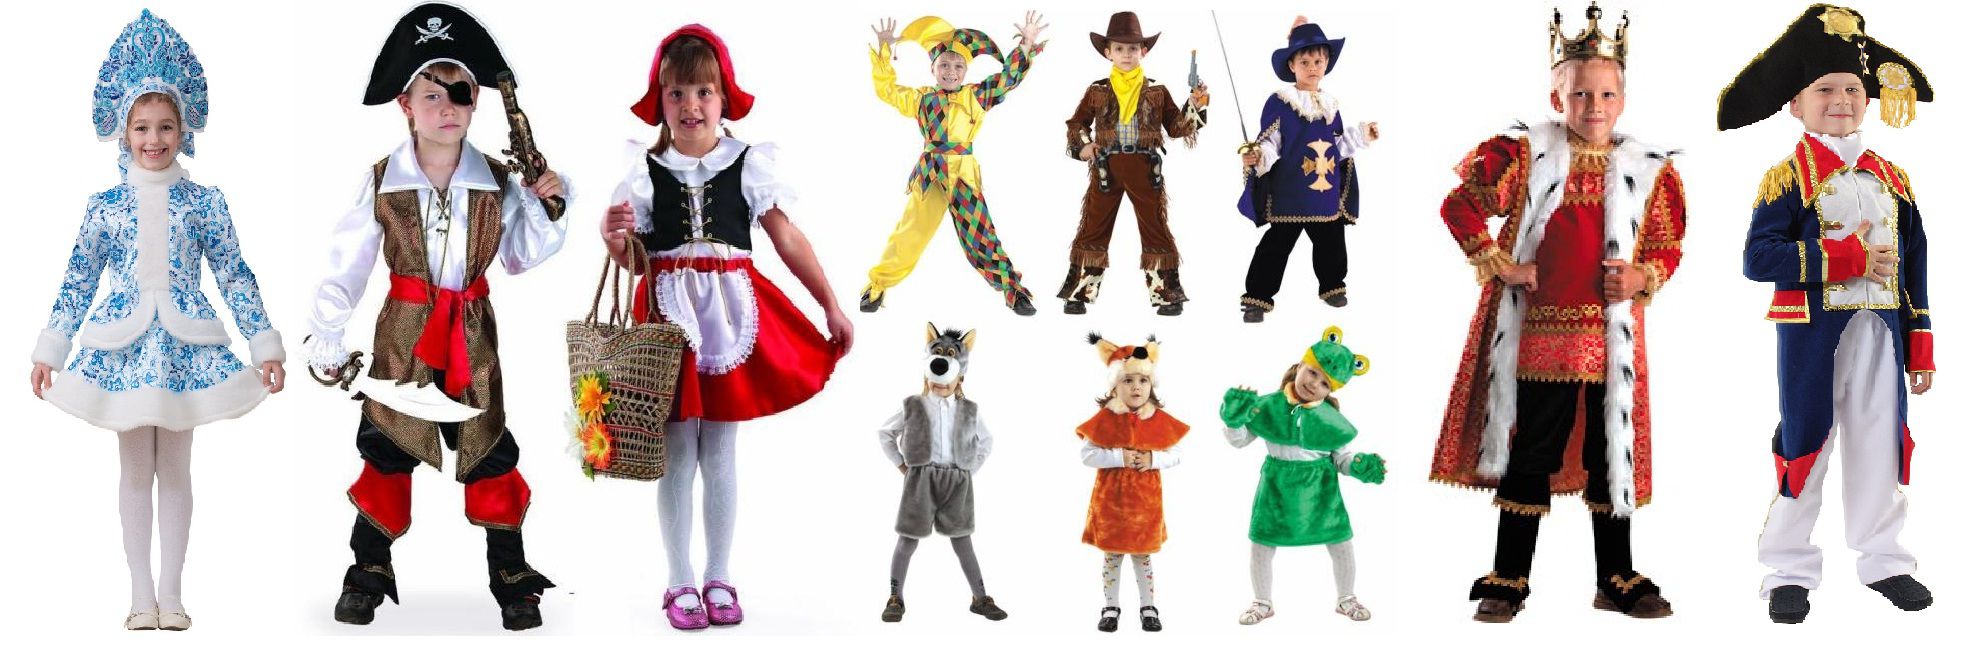 карнавальные костюмы для детей фото